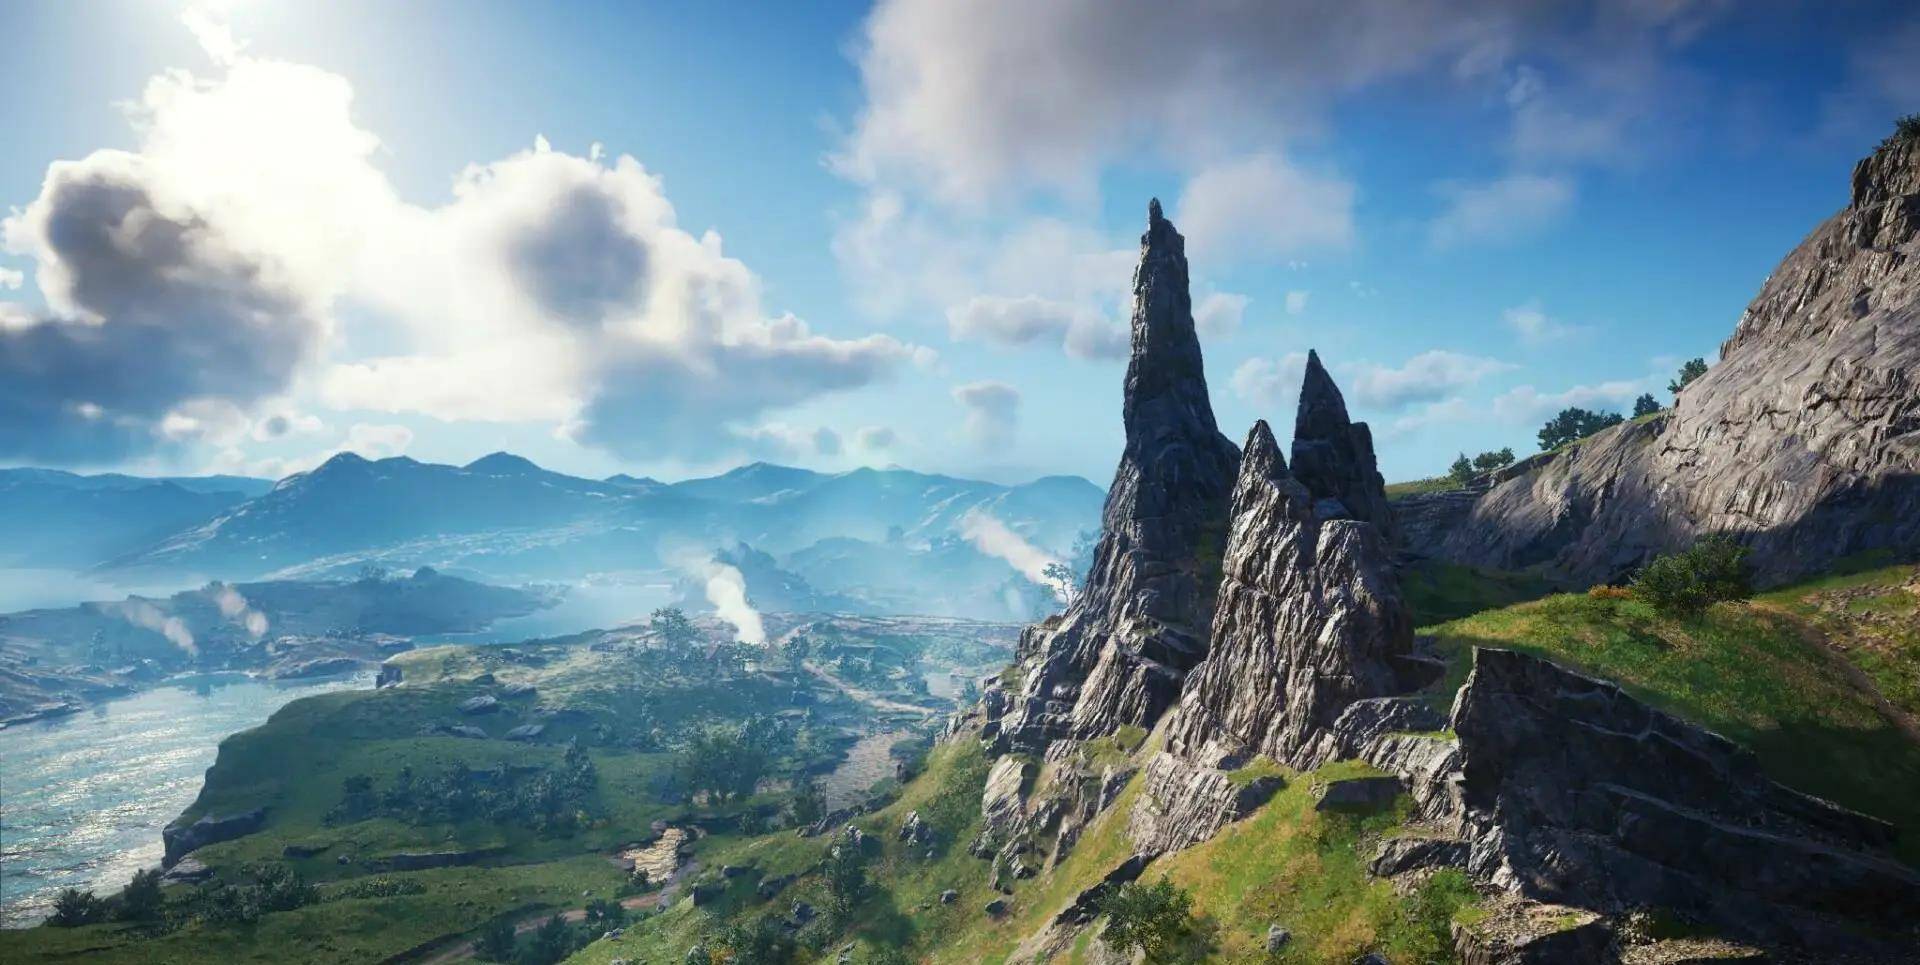 斯凯岛,大自然最后一片秘境,《权力的游戏》最美取景地